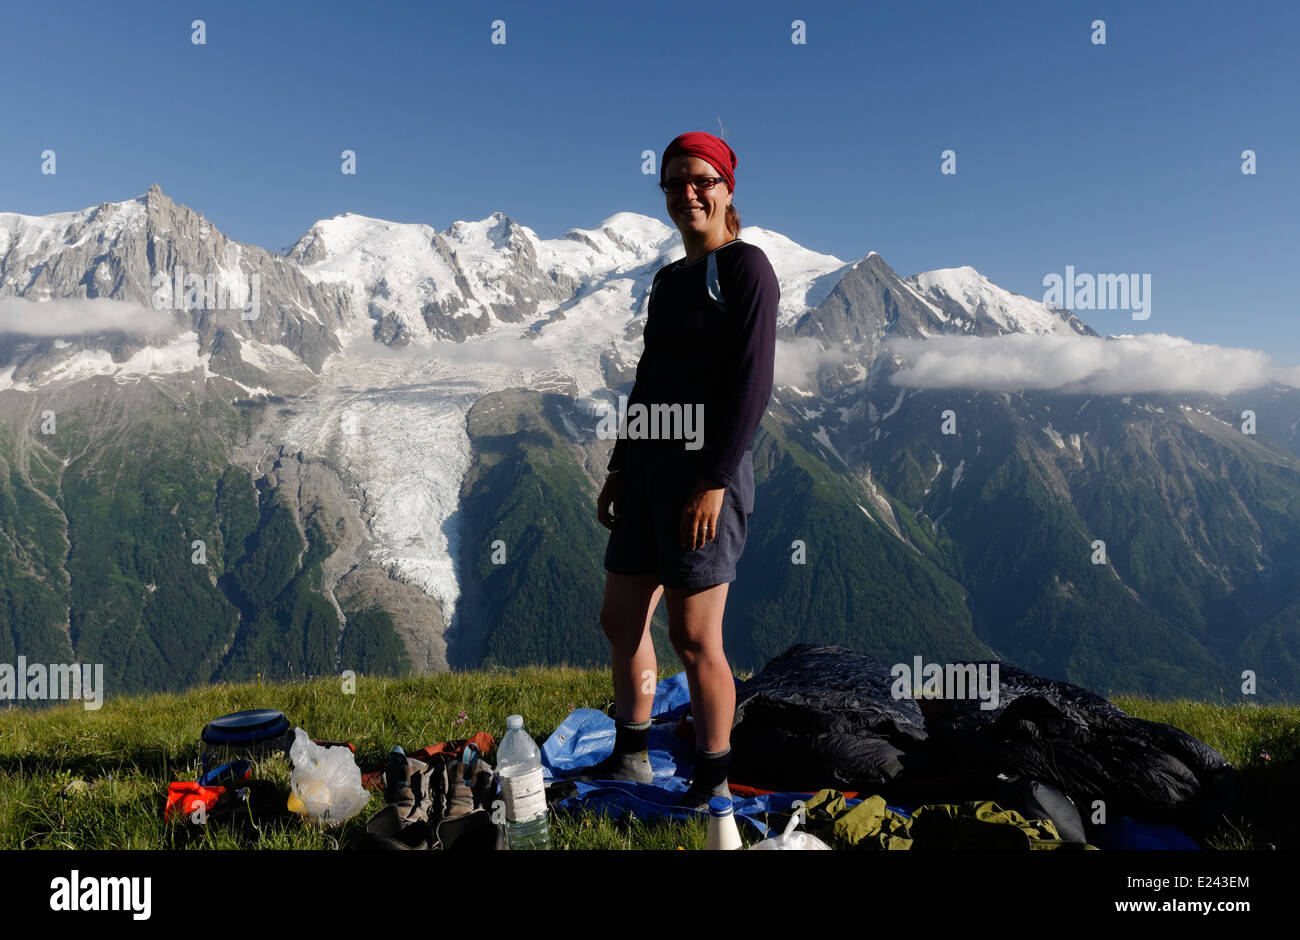 Une dame à un camp sauvage sur le Brévent, dans les Alpes françaises avec le massif du Mont Blanc au-delà Banque D'Images